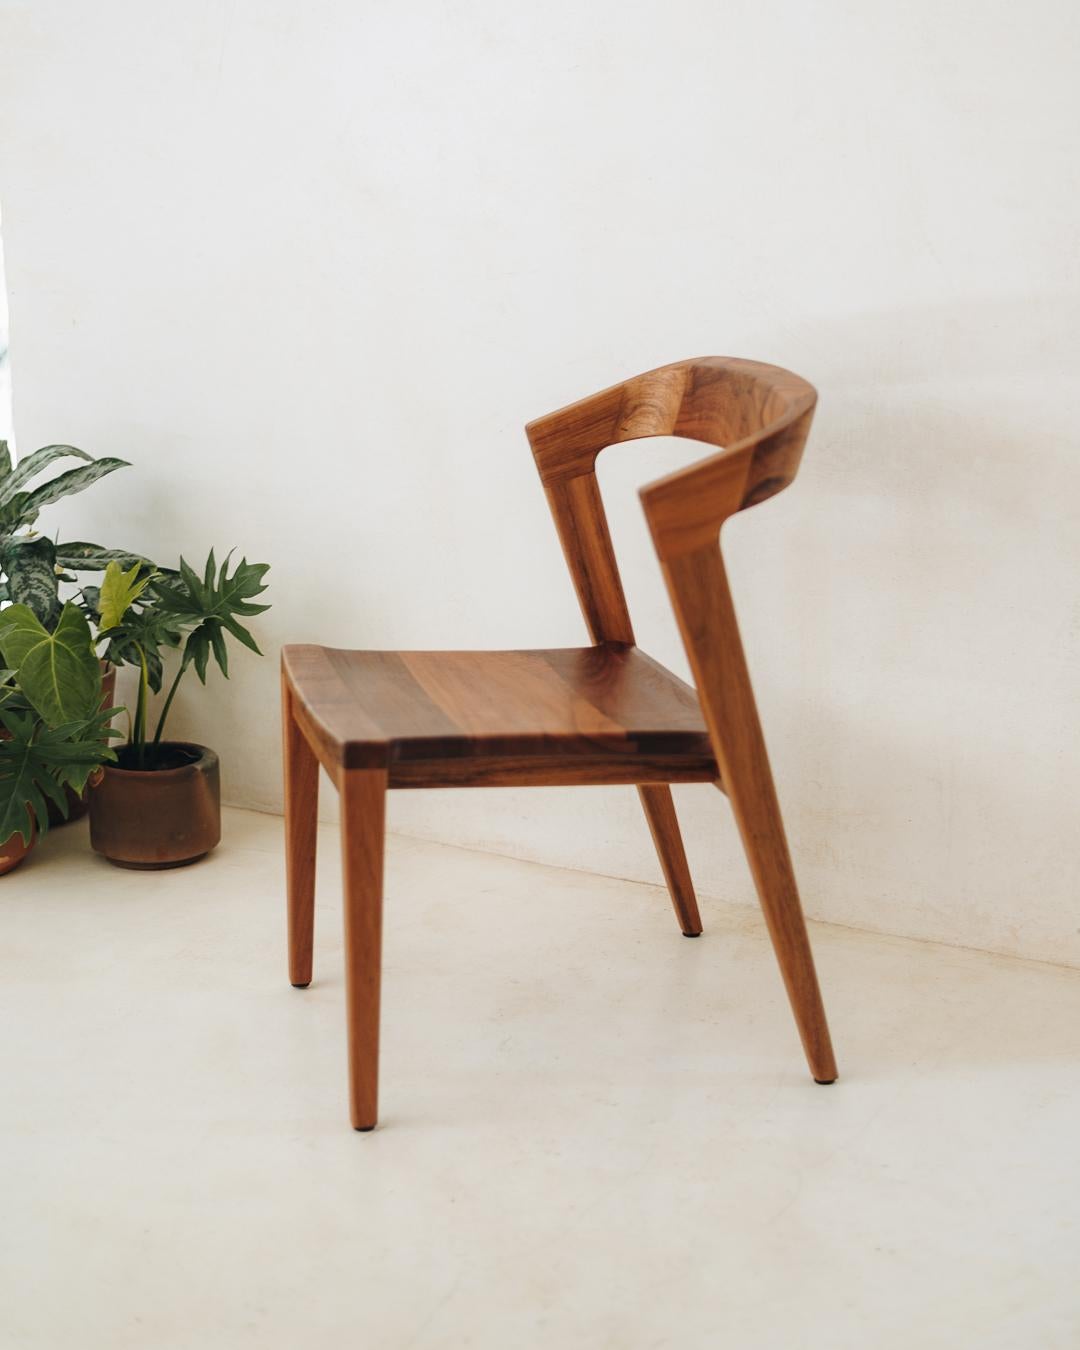 La chaise Tamay allie personnalité et subtilité, grâce à des lignes simples et des proportions harmonieuses, qui soulignent la beauté naturelle du bois tropical massif, originaire du sud-est du Mexique. Produit en mettant l'accent sur les